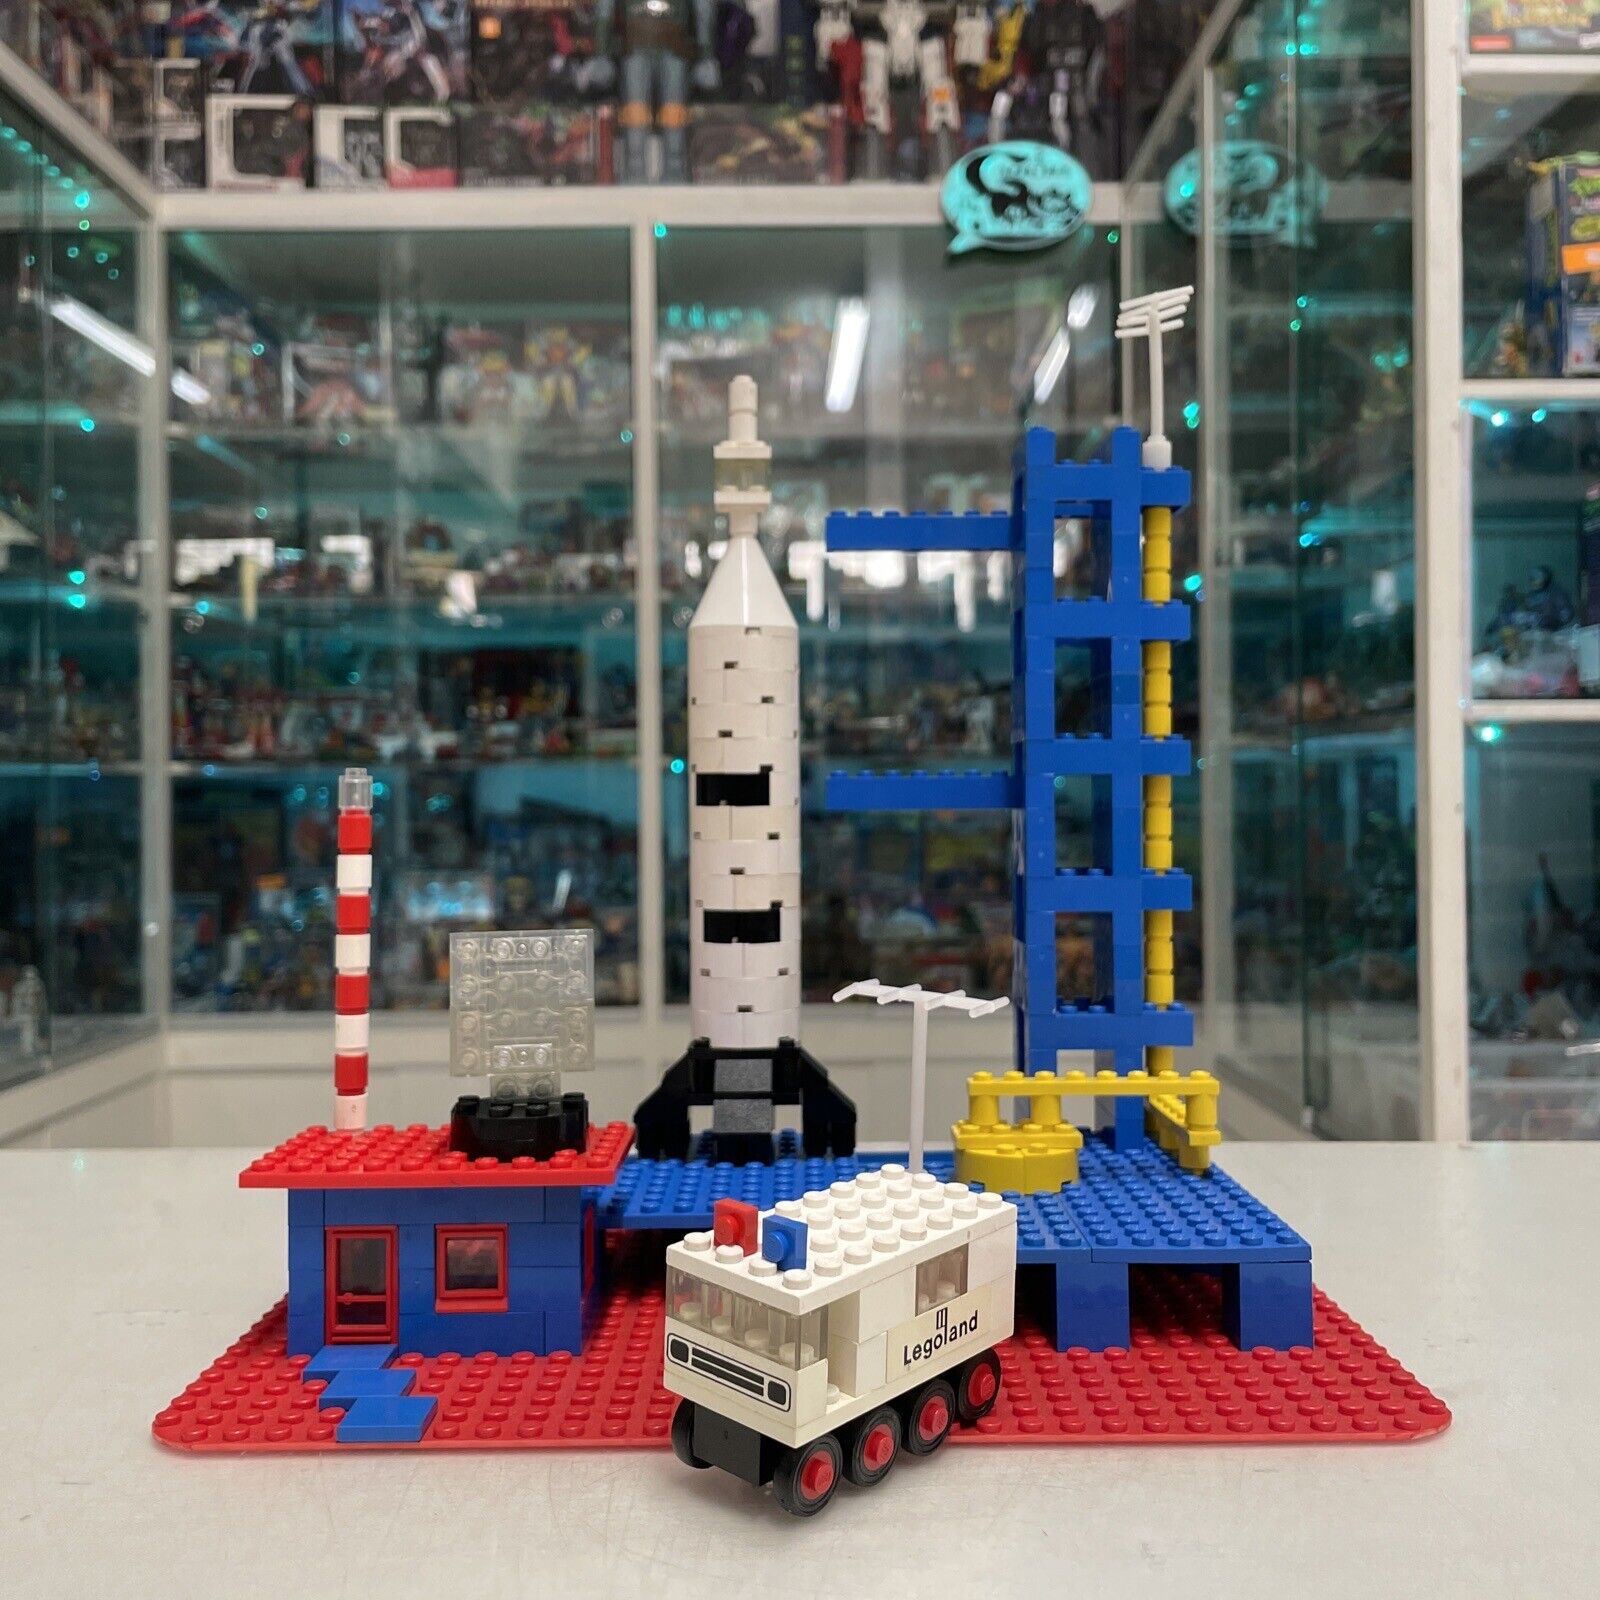 Lego-LEGOLAND-Set-358-Rocket-Base-vintage-70-80-145504901889